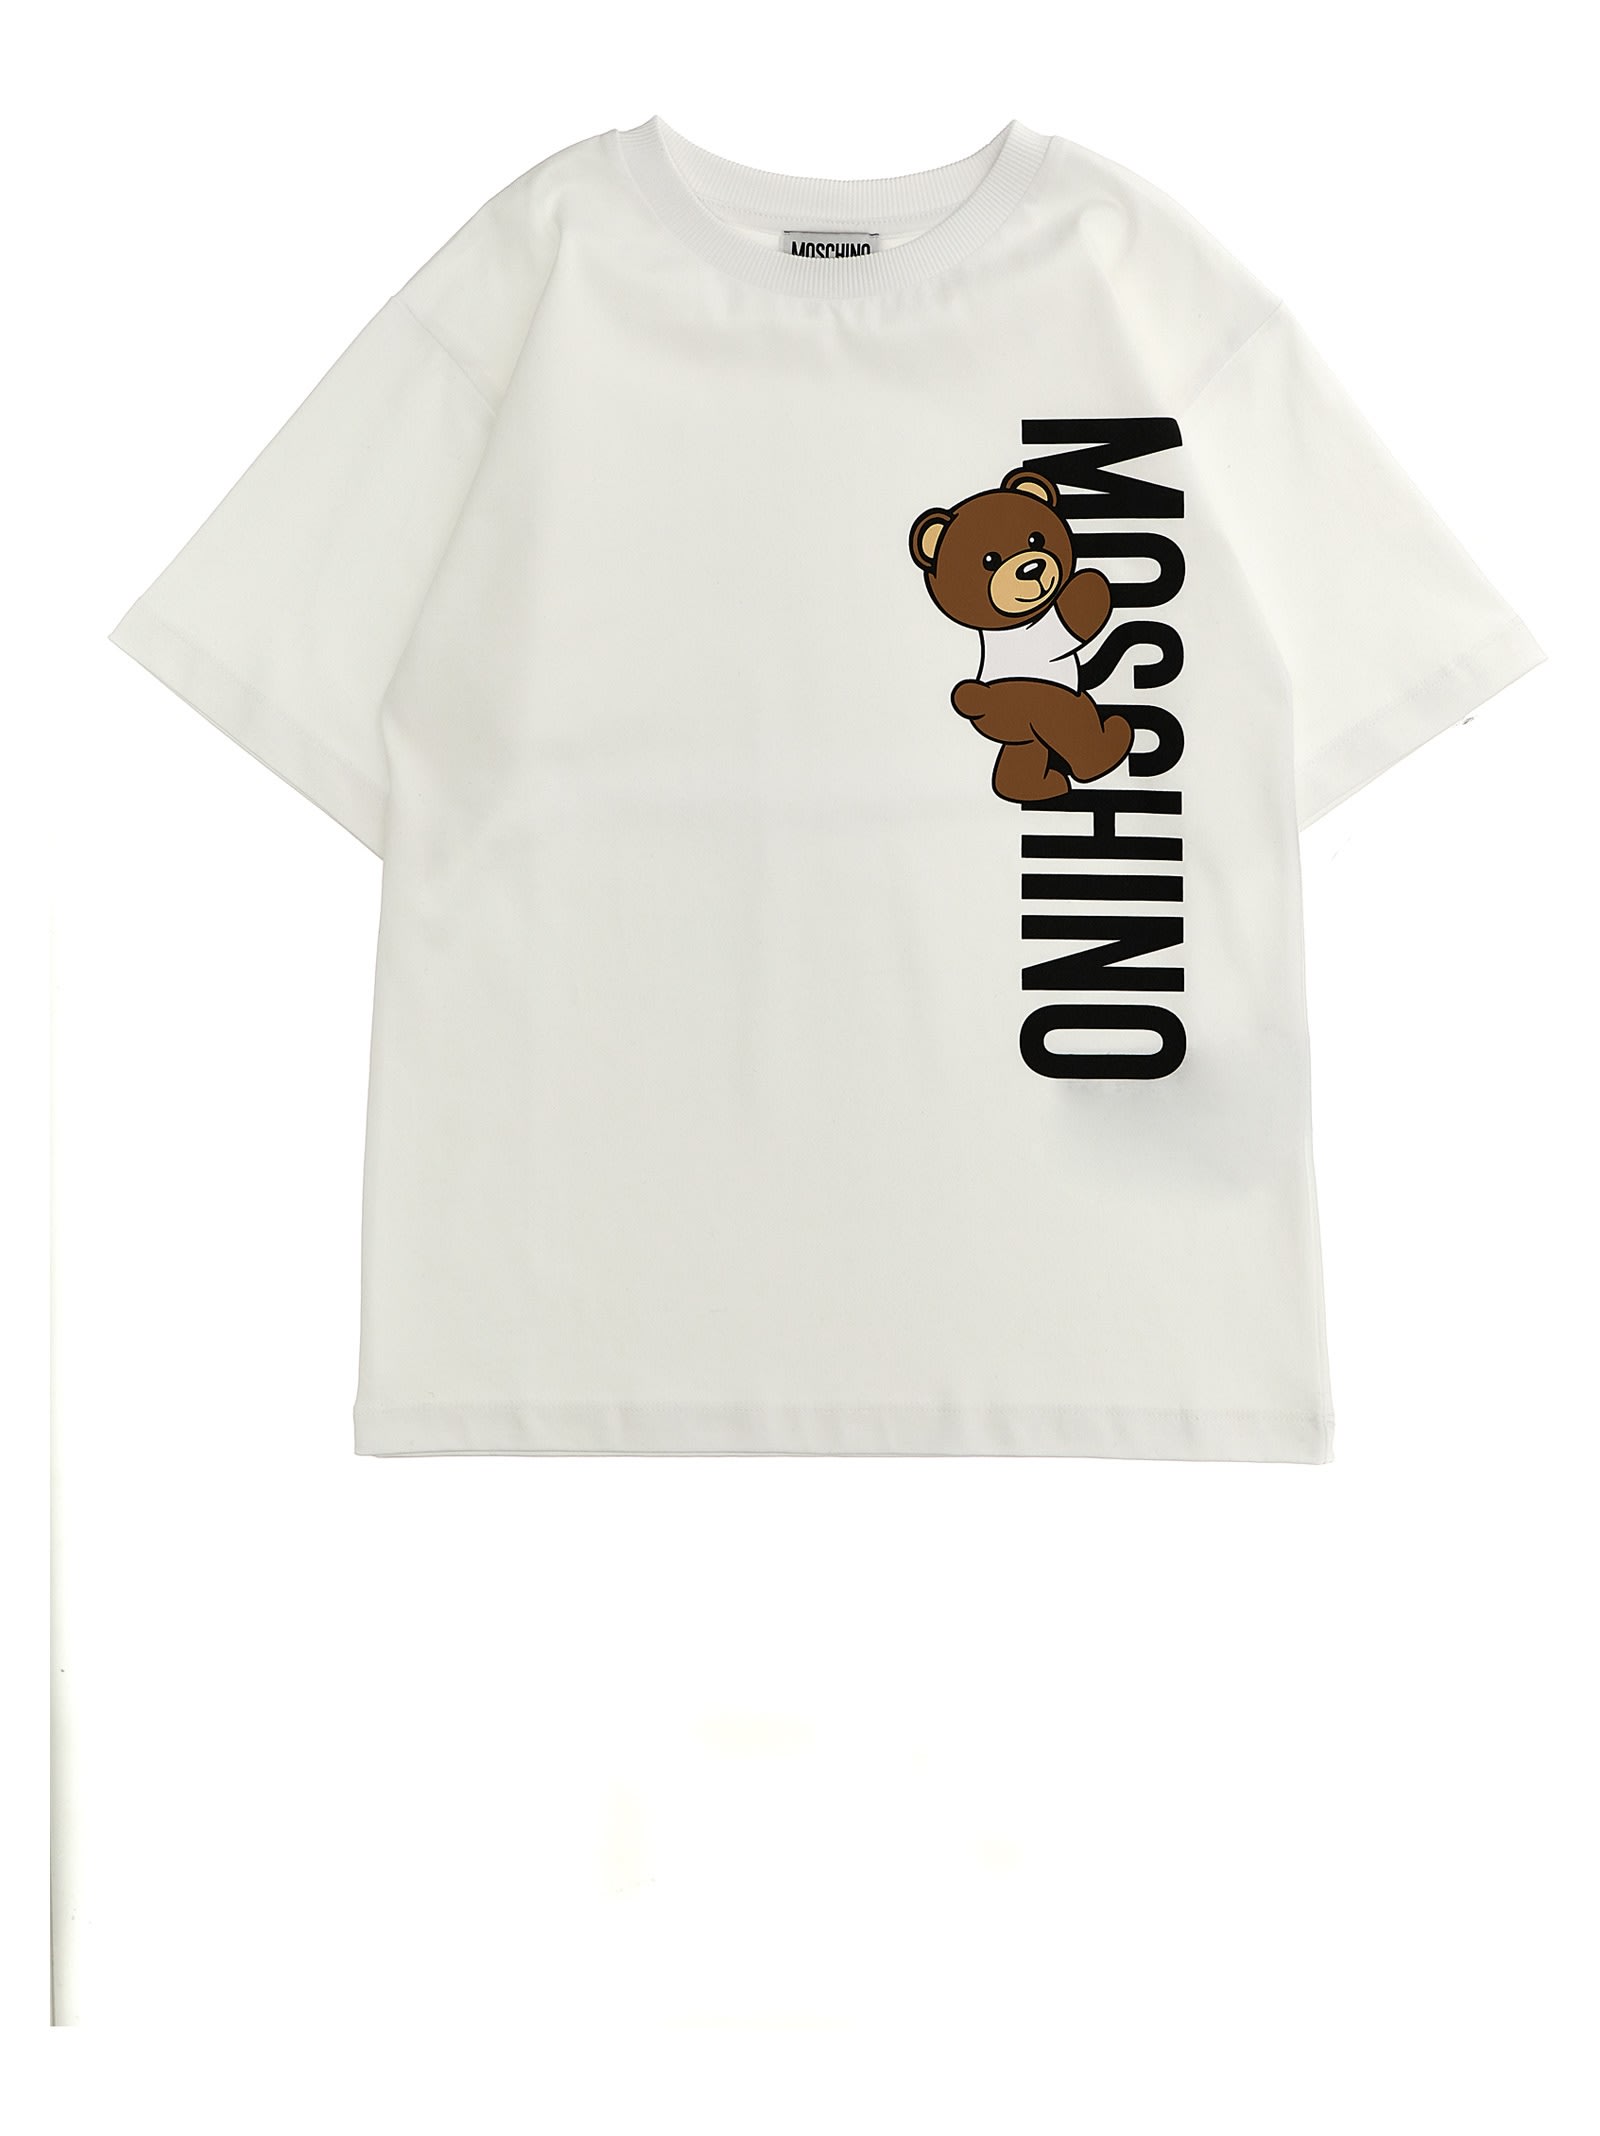 Moschino Kids' Logo Print T-shirt In White